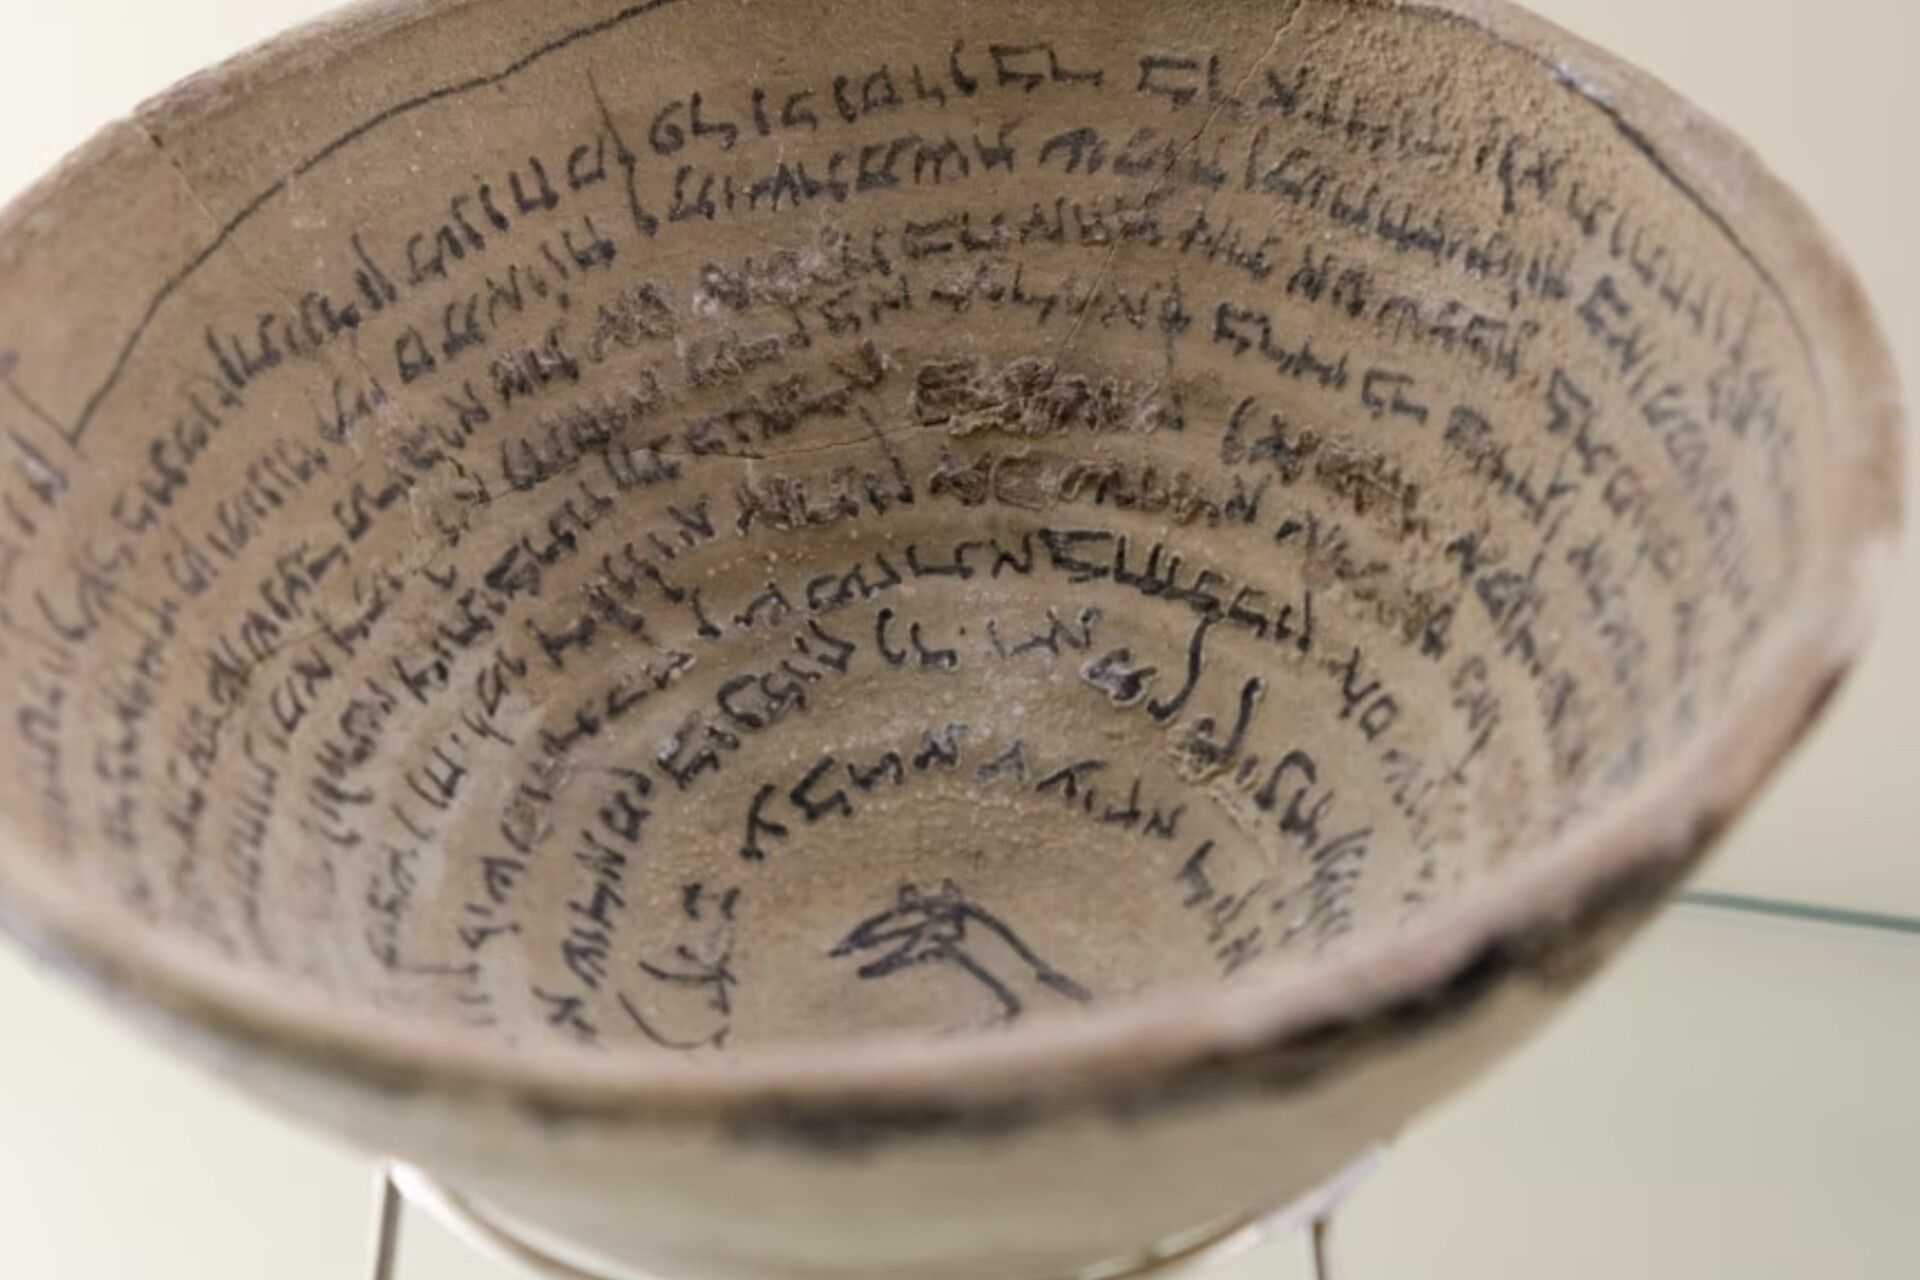 楔形文字: アッカドの花瓶に書かれた楔形文字の表現